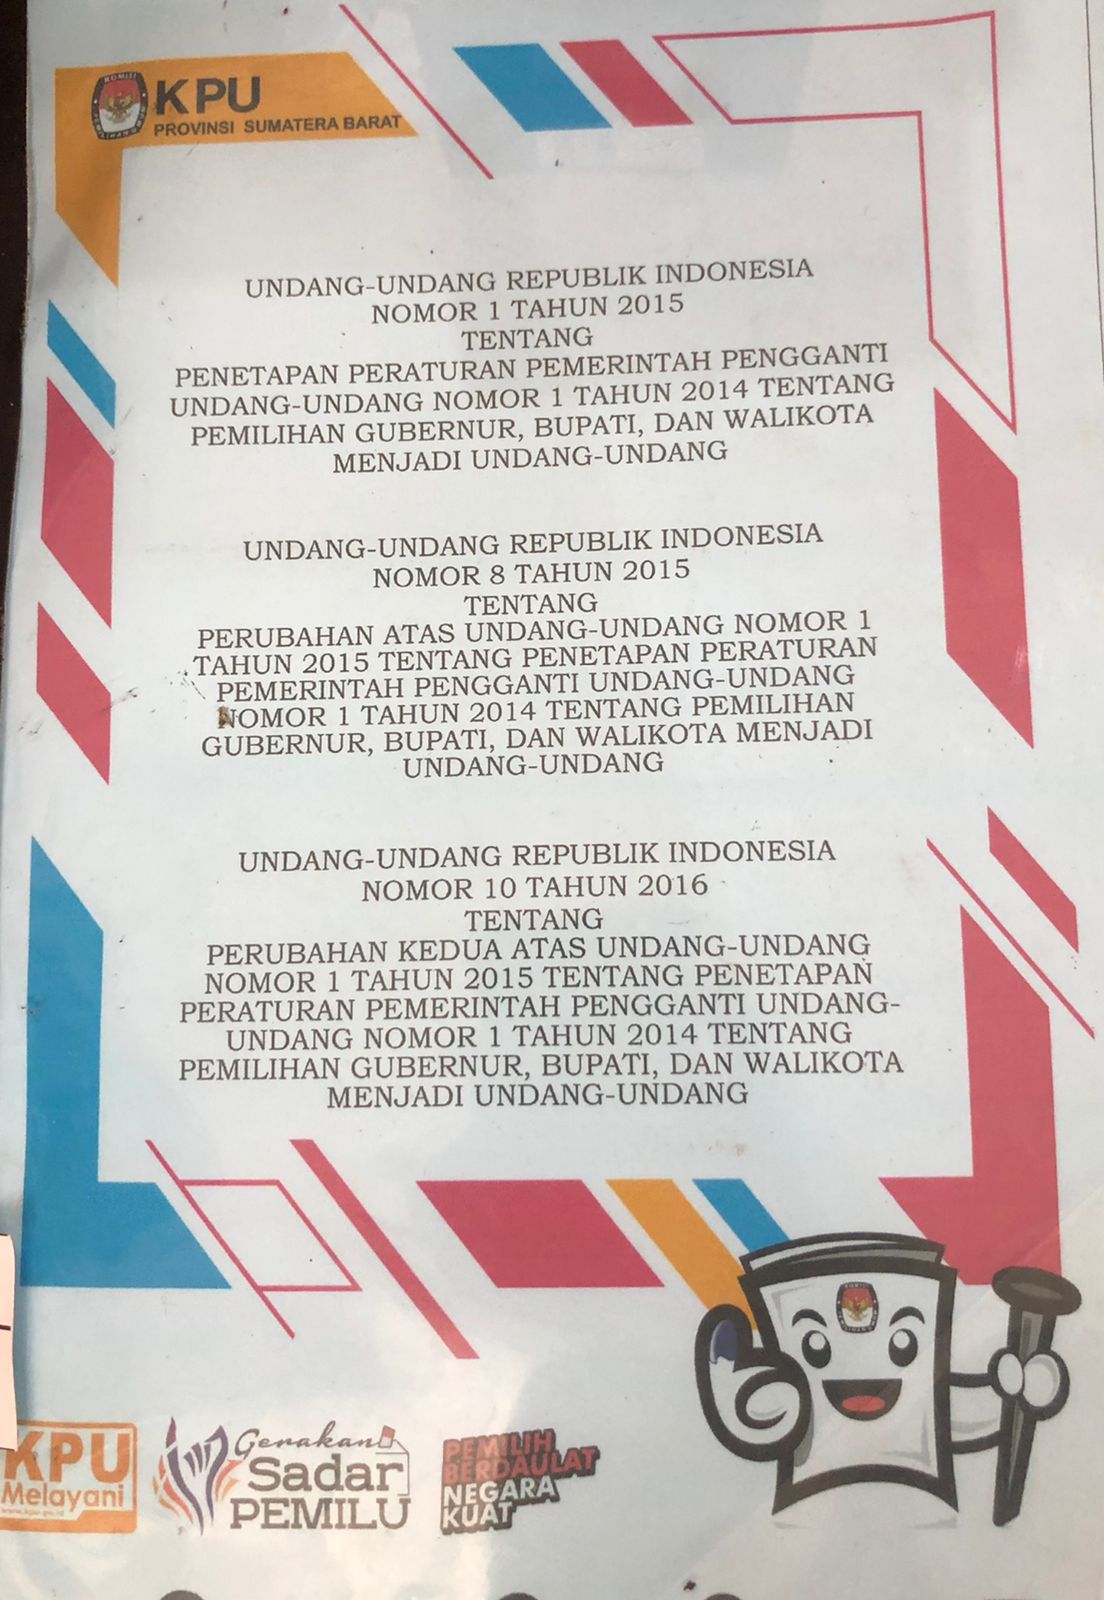 Undang-Undang Republik Indonesia Nomor 1 Tahun 2015 Tentang Penetapan PP Pengganti UU No. 1 Tahun 2014 tentang Pemilihan Gubernur, Bupati dan Walikota Menjadi Undang-Undang, Nomor 8 Tahun 2015, Nomor 10 Tahun 2016